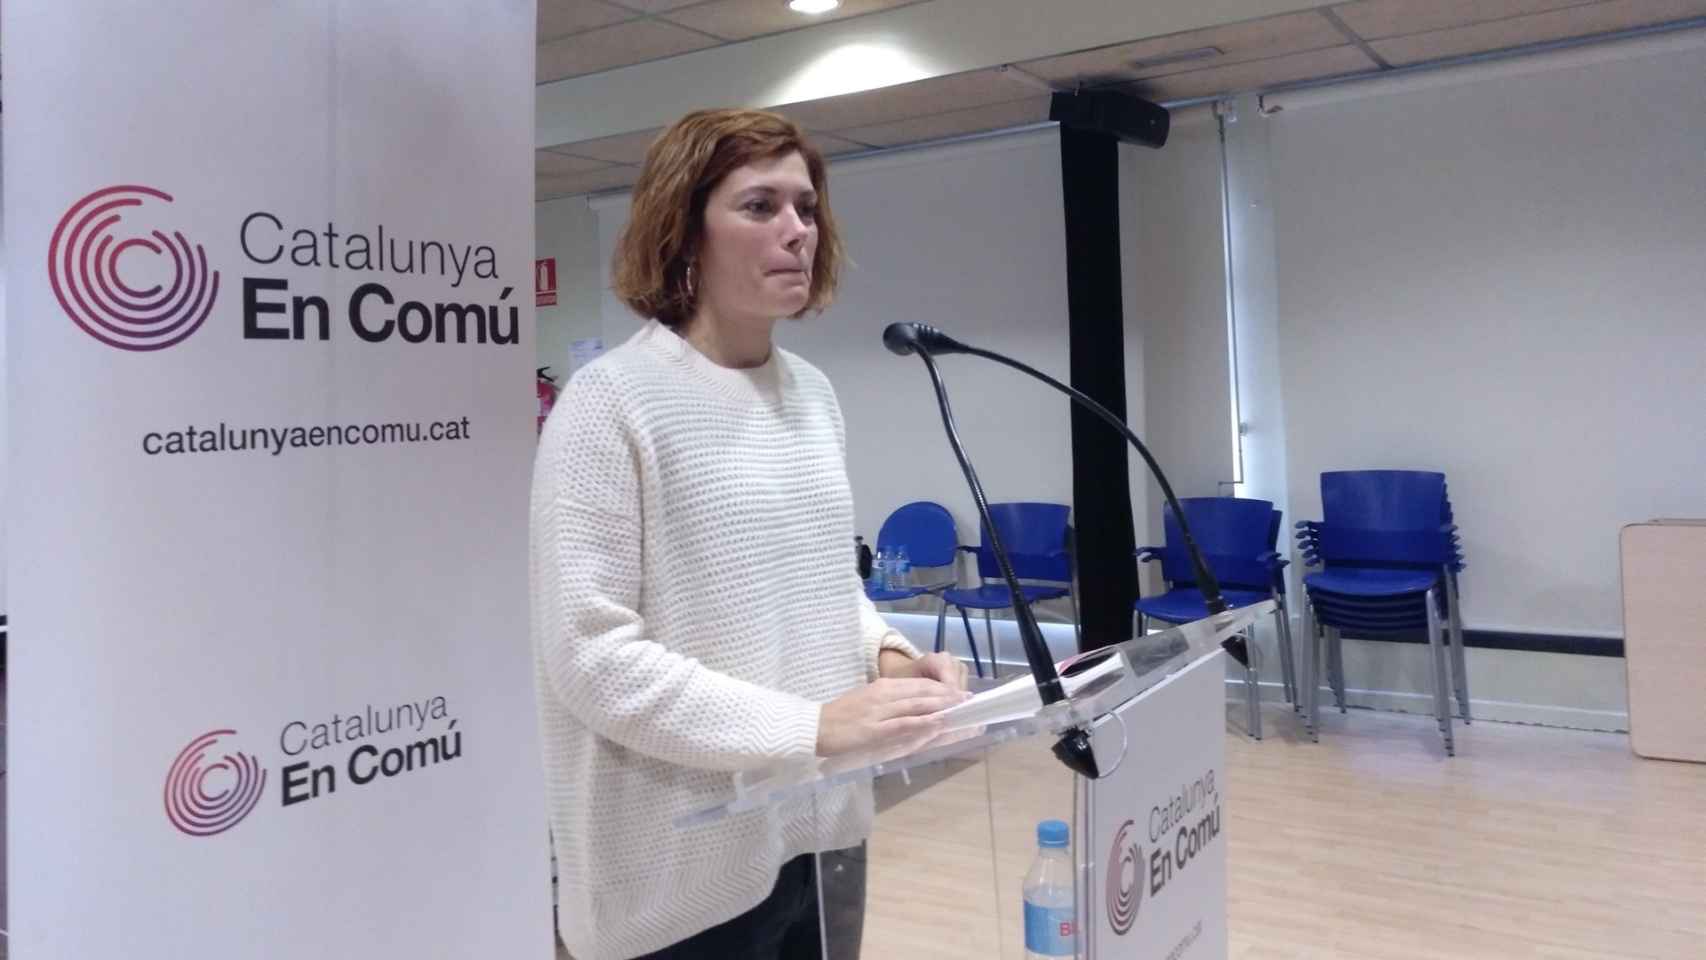 La portavoz de Cataluña en Comú, Elisenda Alamany